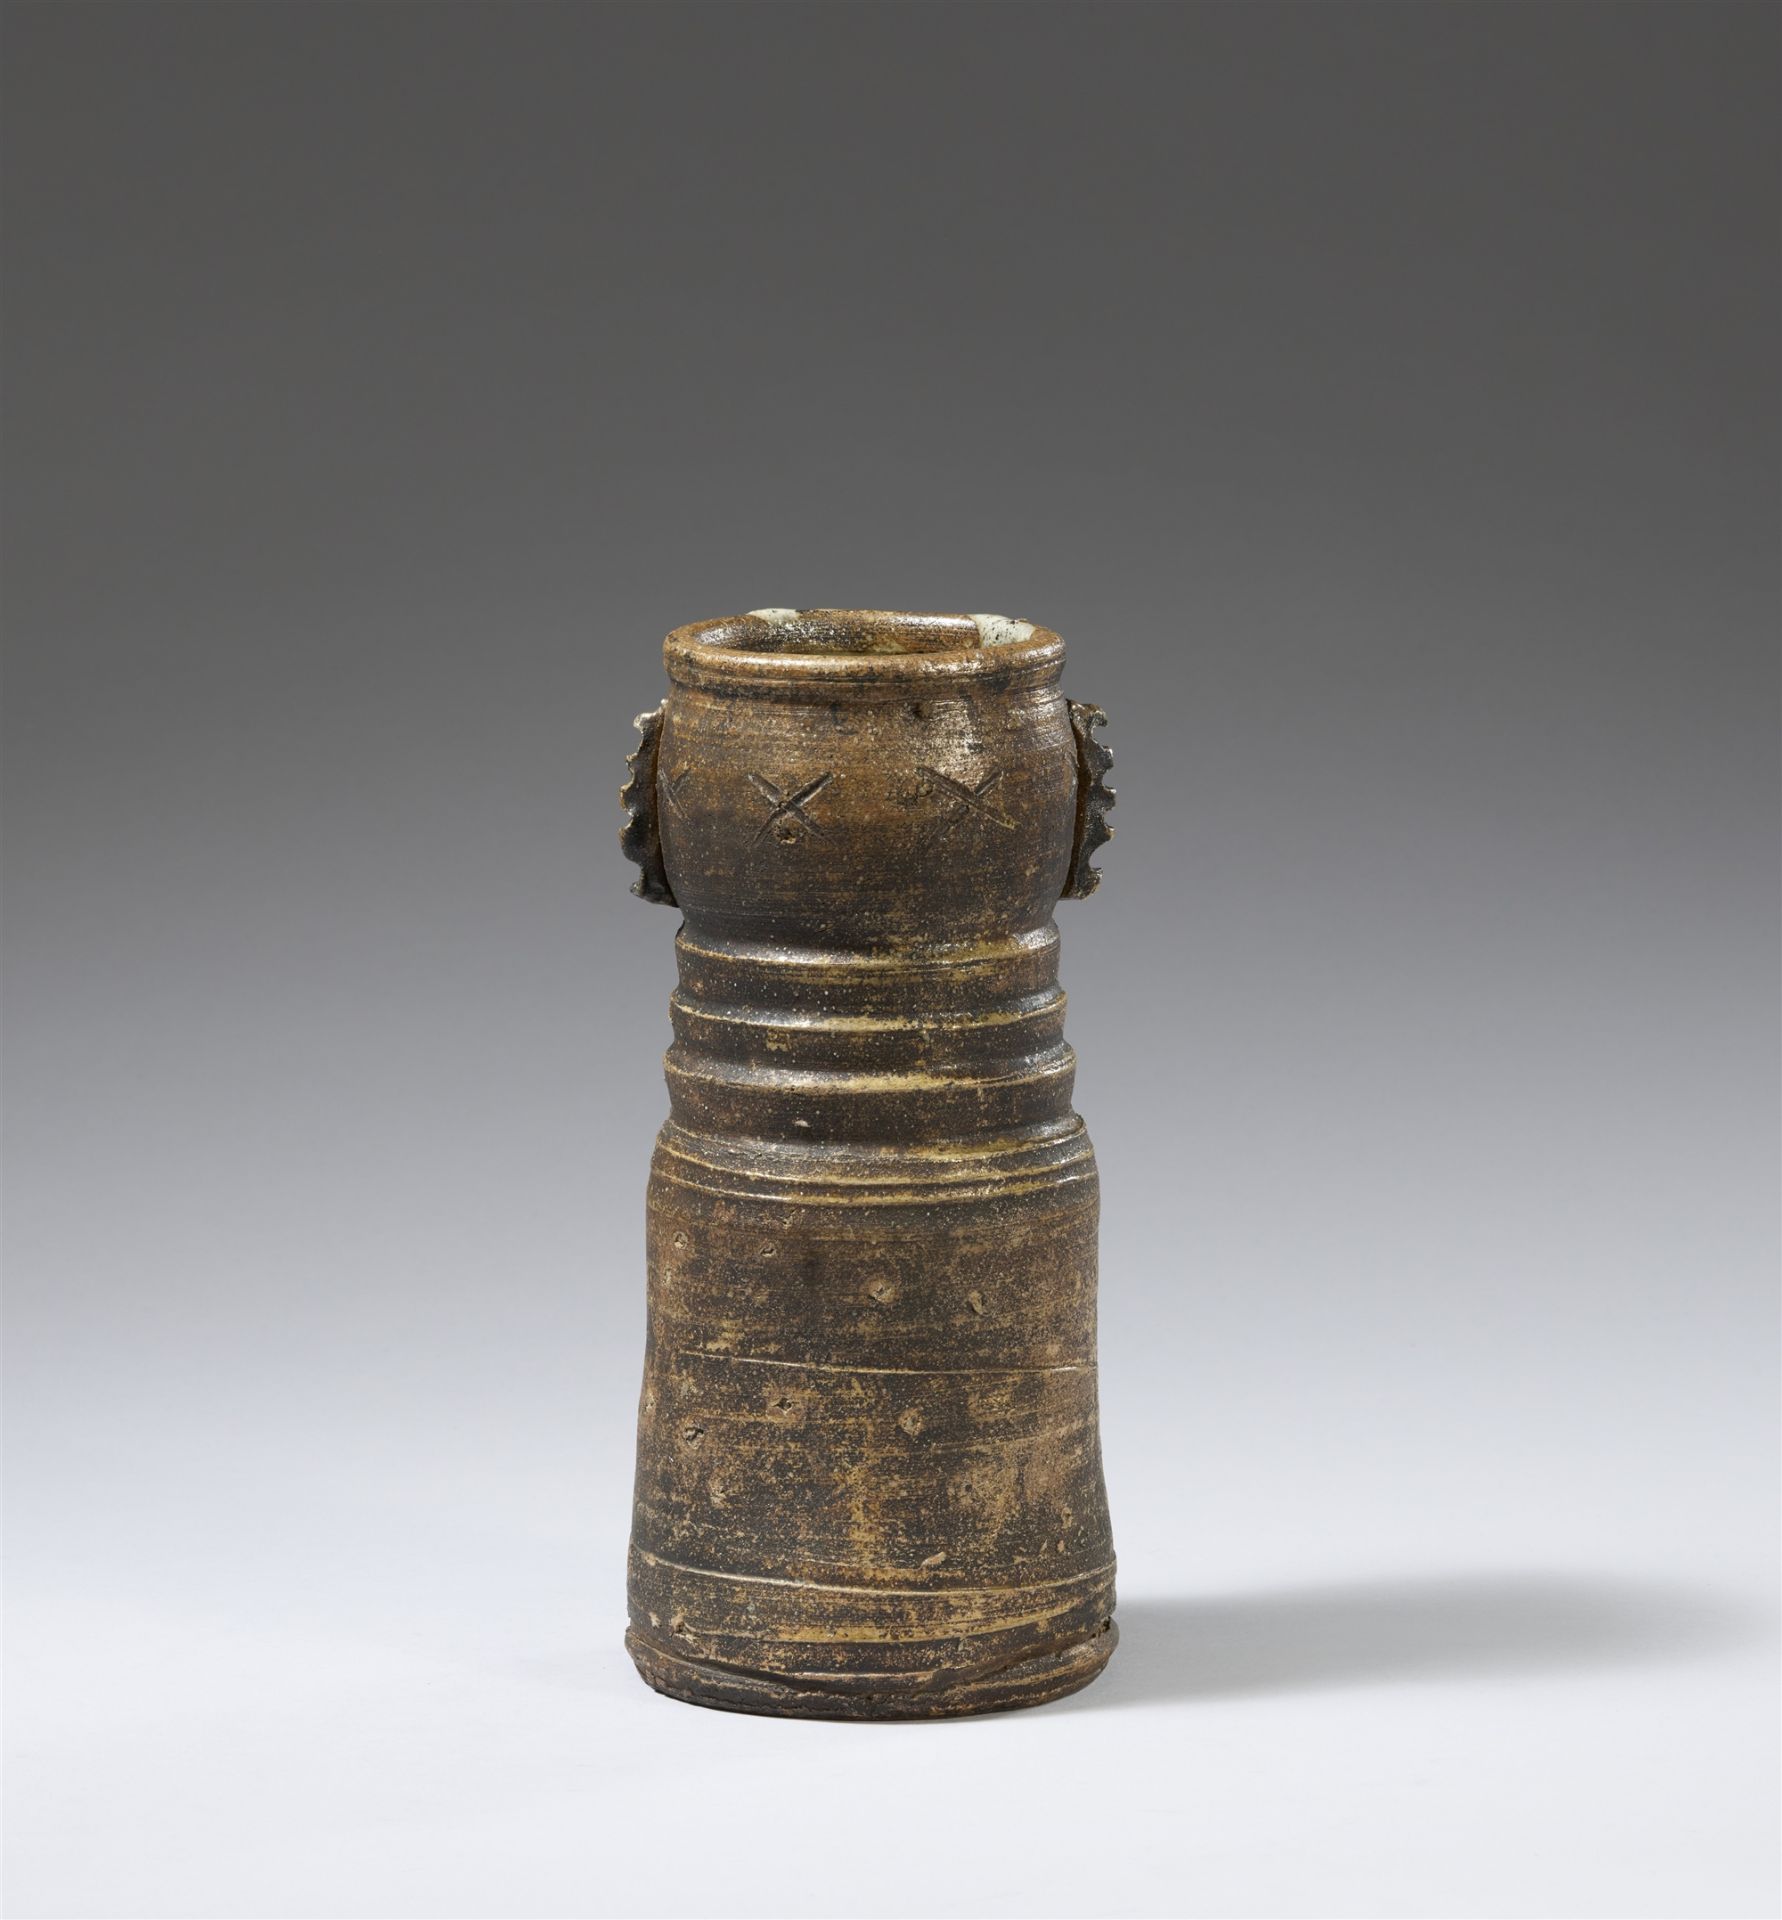 A large Iga flower vase (hanaire). Momoyama/early Edo period, 17th century - Image 3 of 3